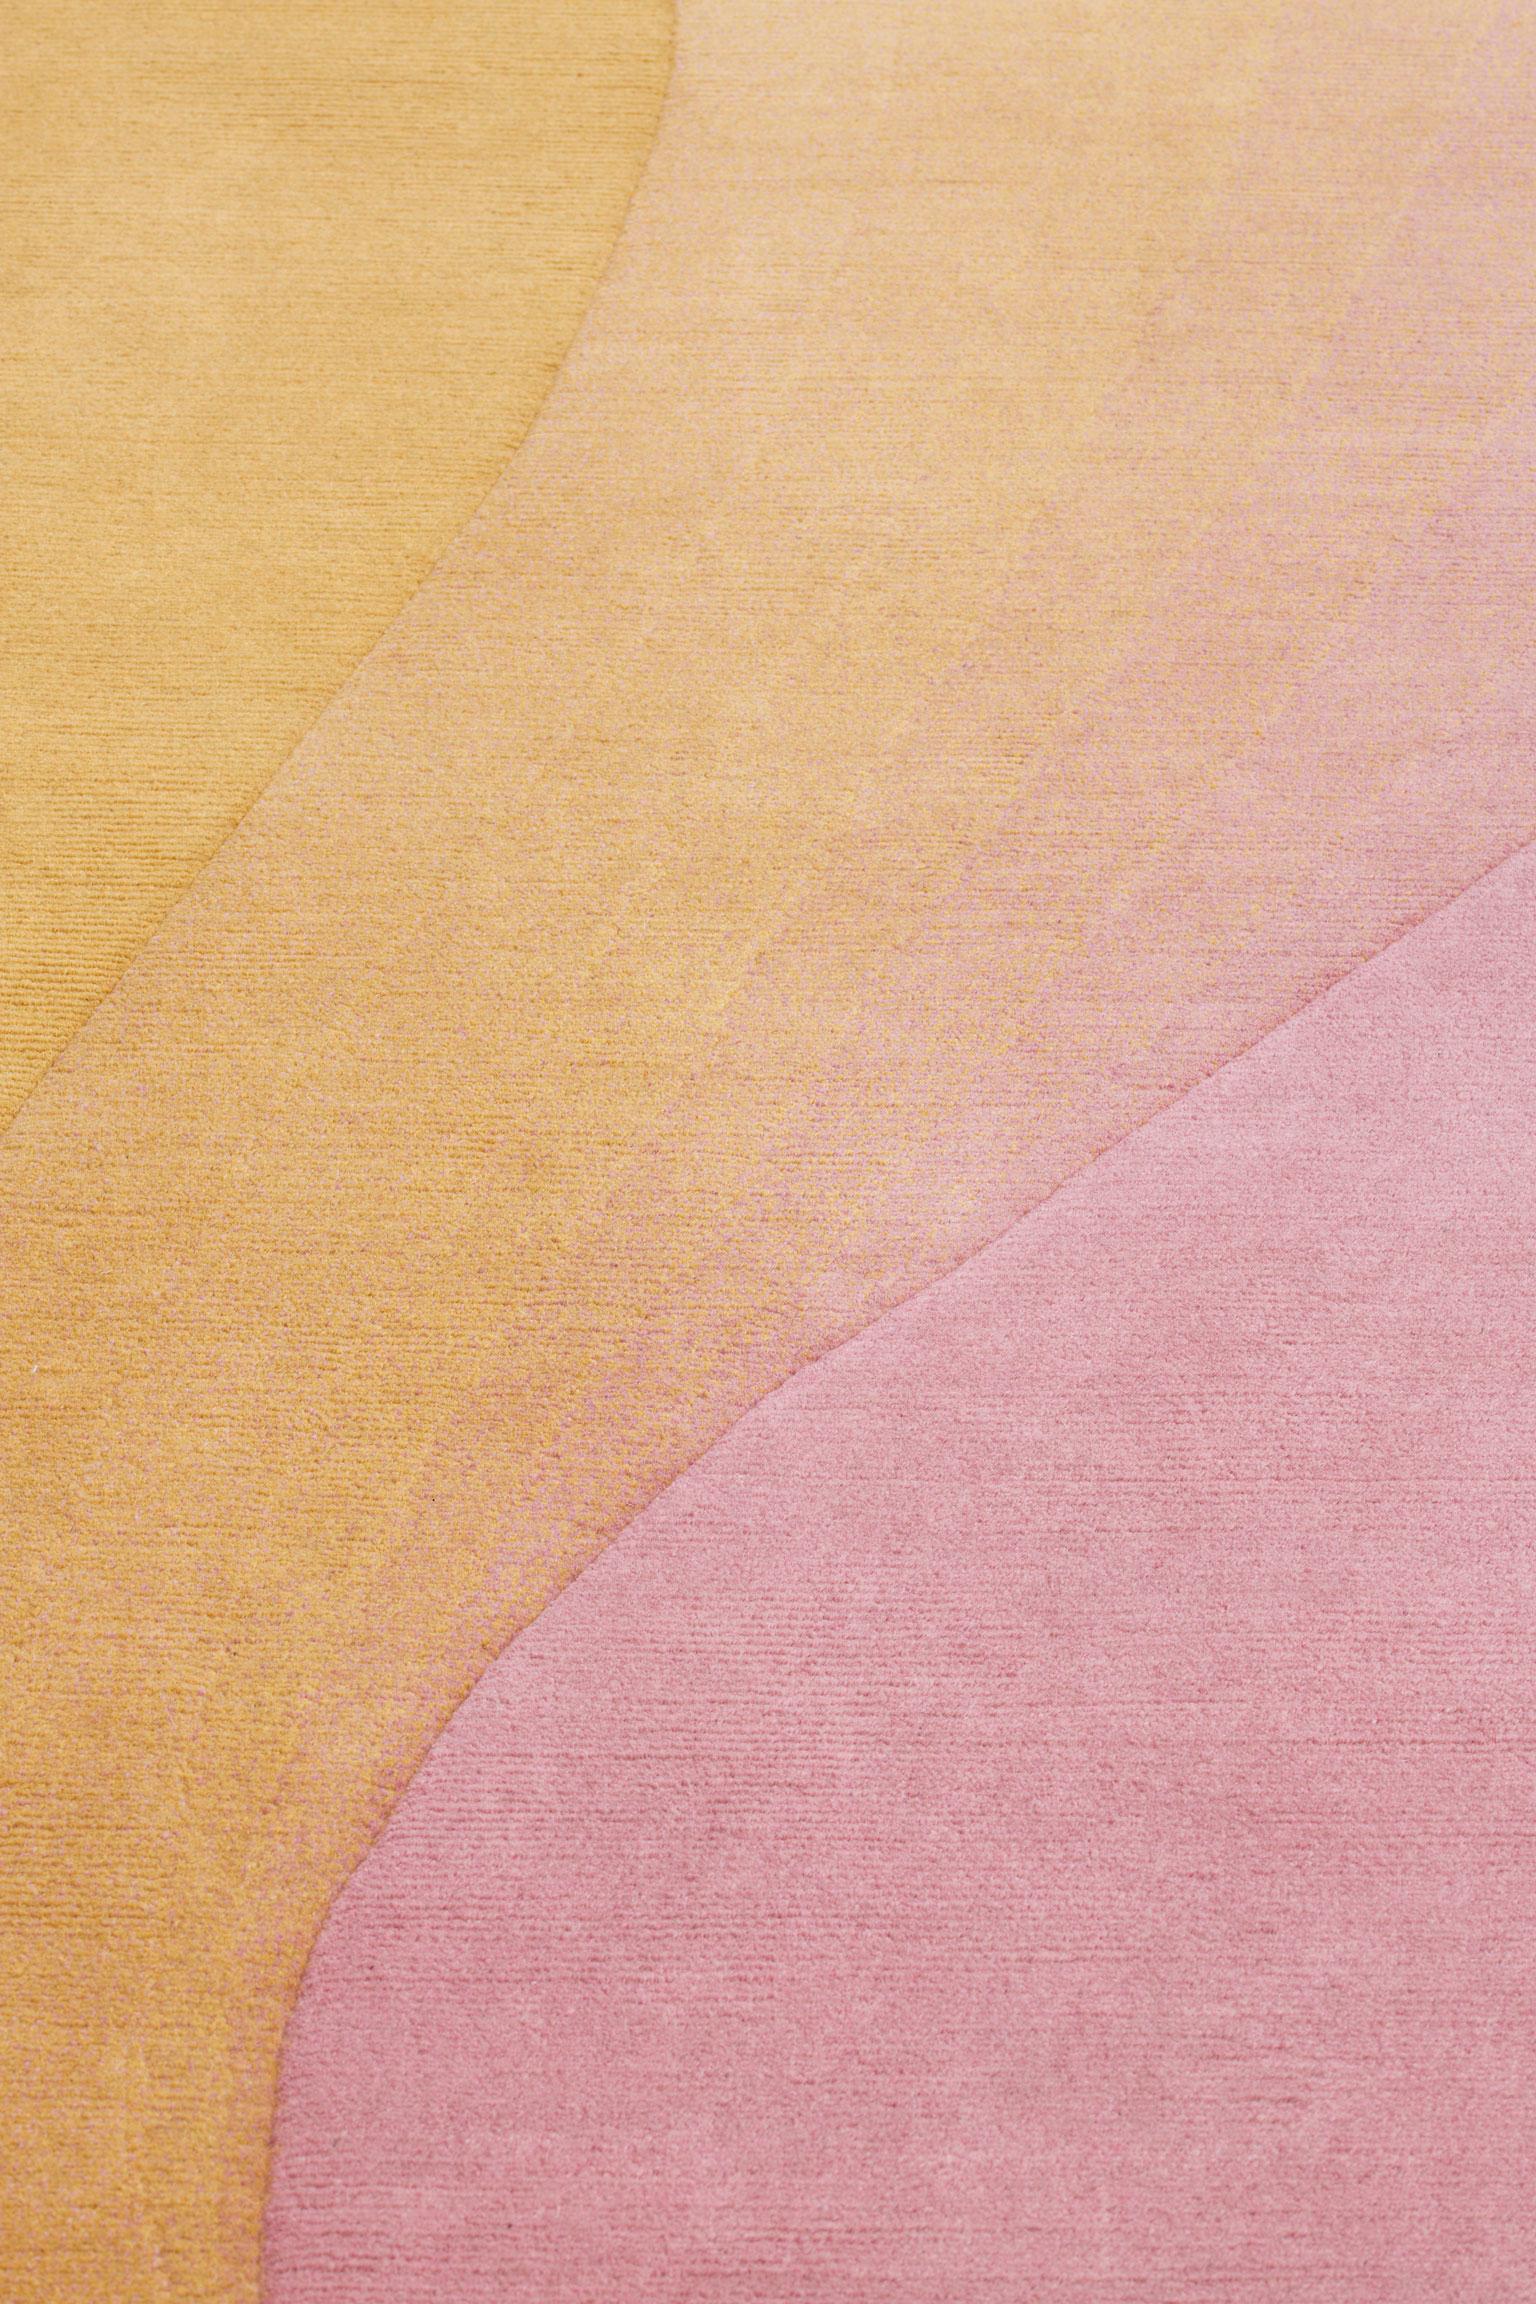 Moderne Collection de cc-tapis - Tidal  Tapis Wave Yellow Pink par Germans Ermičs en vente